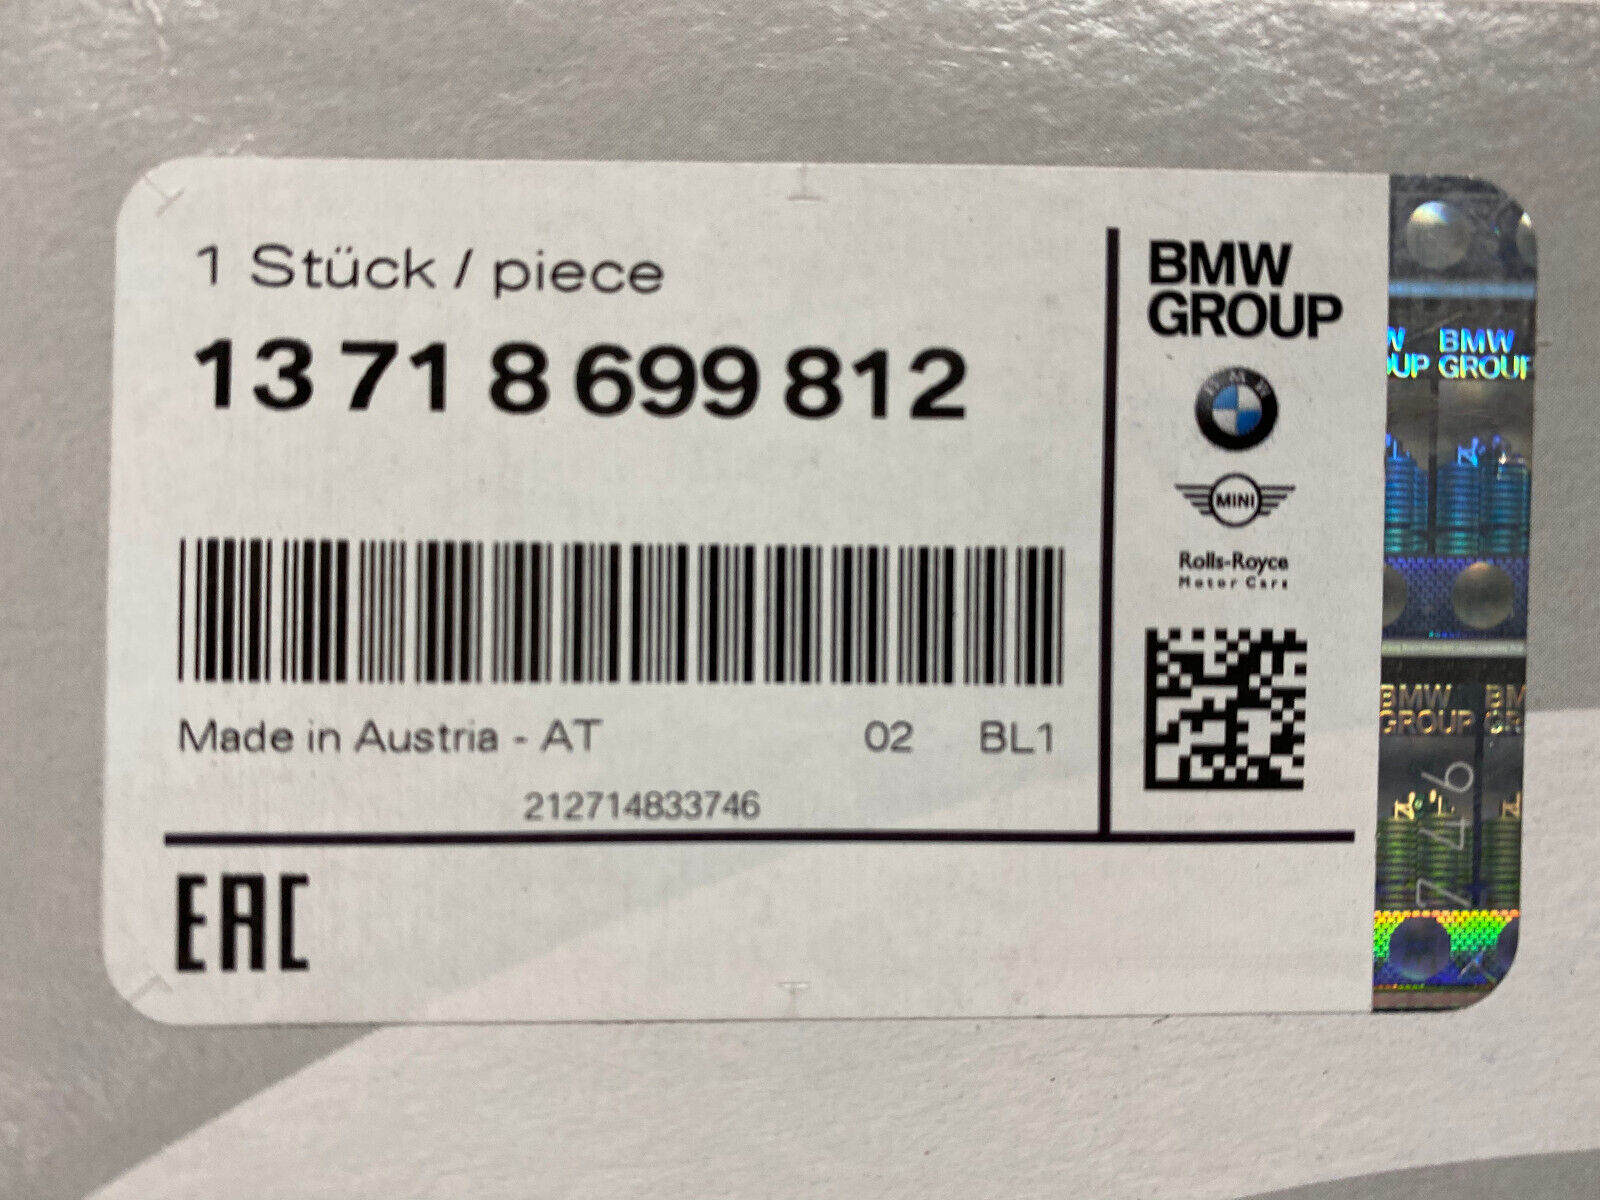 BMW  Air Filter - #13718699812 - Fits BMW M850i xDrive & M550i xDrive